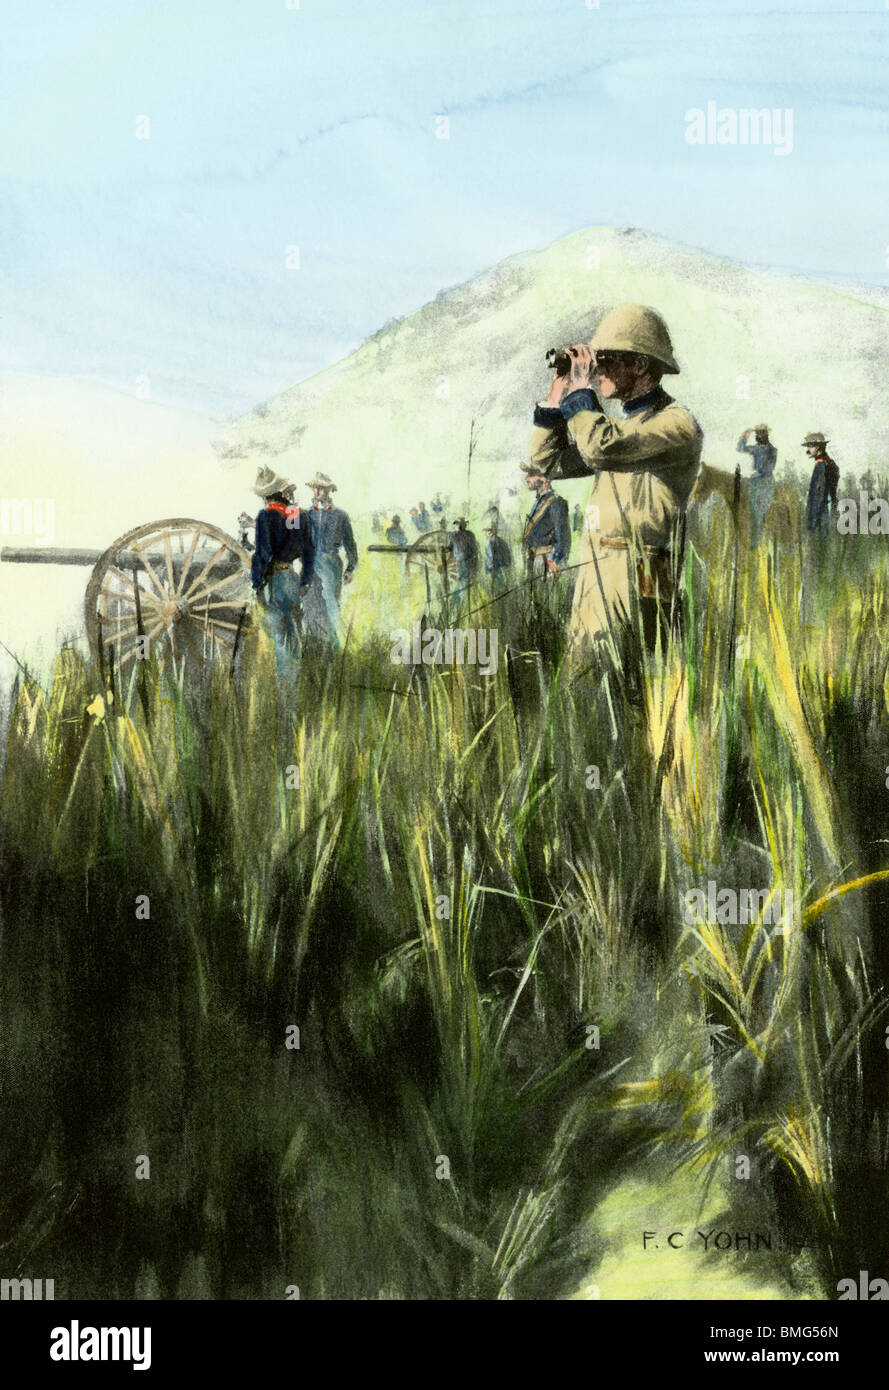 Amerikanische Offiziere beobachten Artilleriefeuer von Coamo, Puerto Rico, Spanisch-Amerikanischen Krieg, 1898. Handcolorierte halftone einer Abbildung Stockfoto